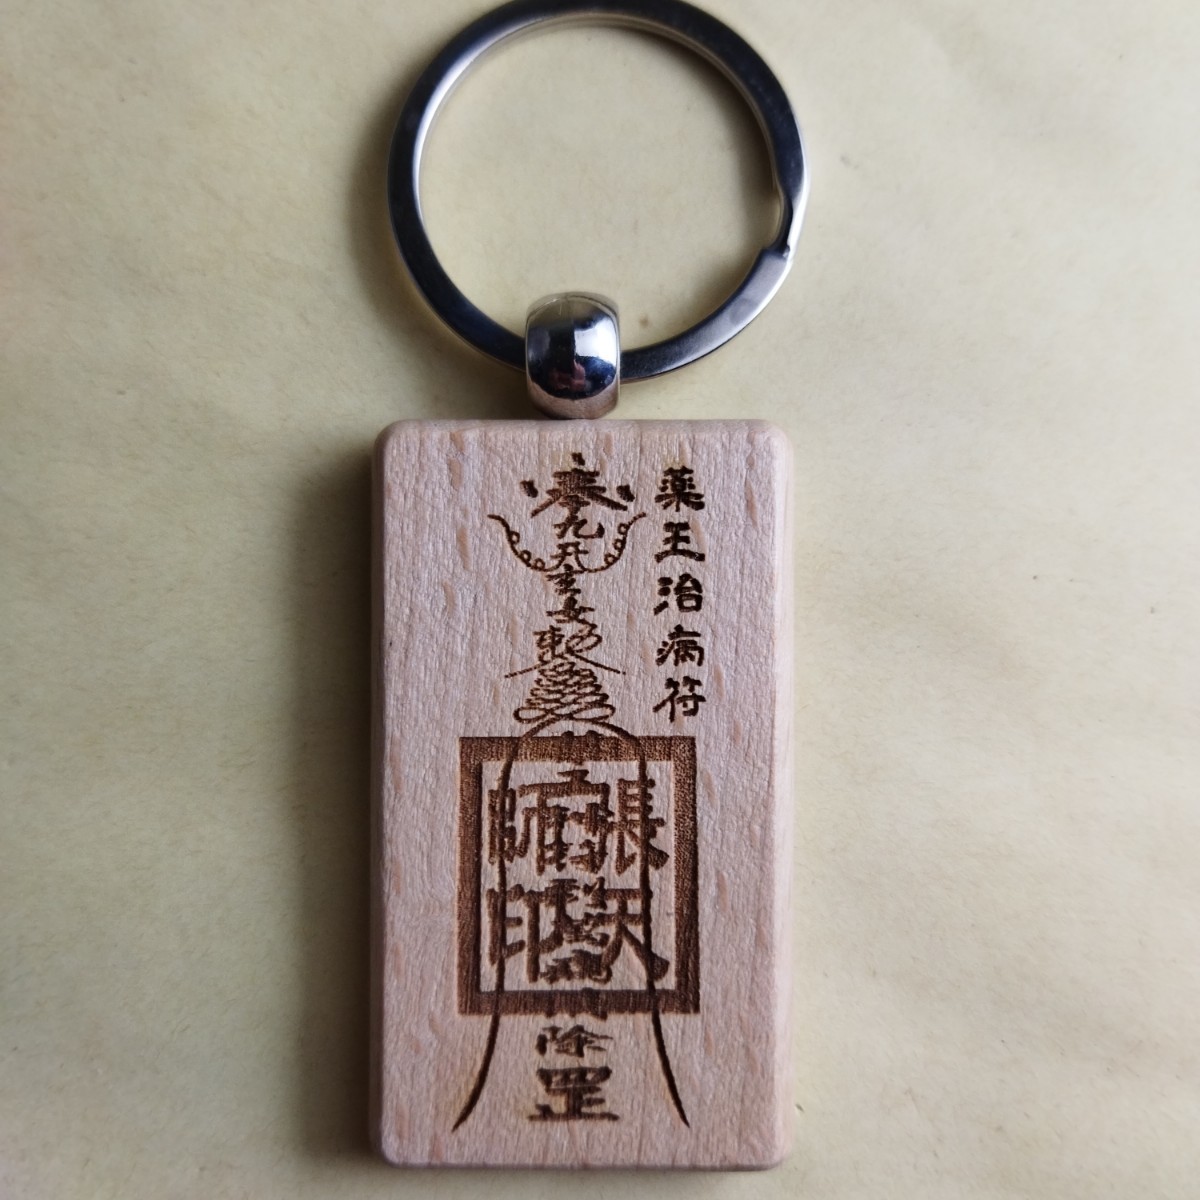 木雕护身符钥匙扣, 药王治病护身符, 道教, 阴阳道, 护符, 杂货, 钥匙圈, 手工制作的